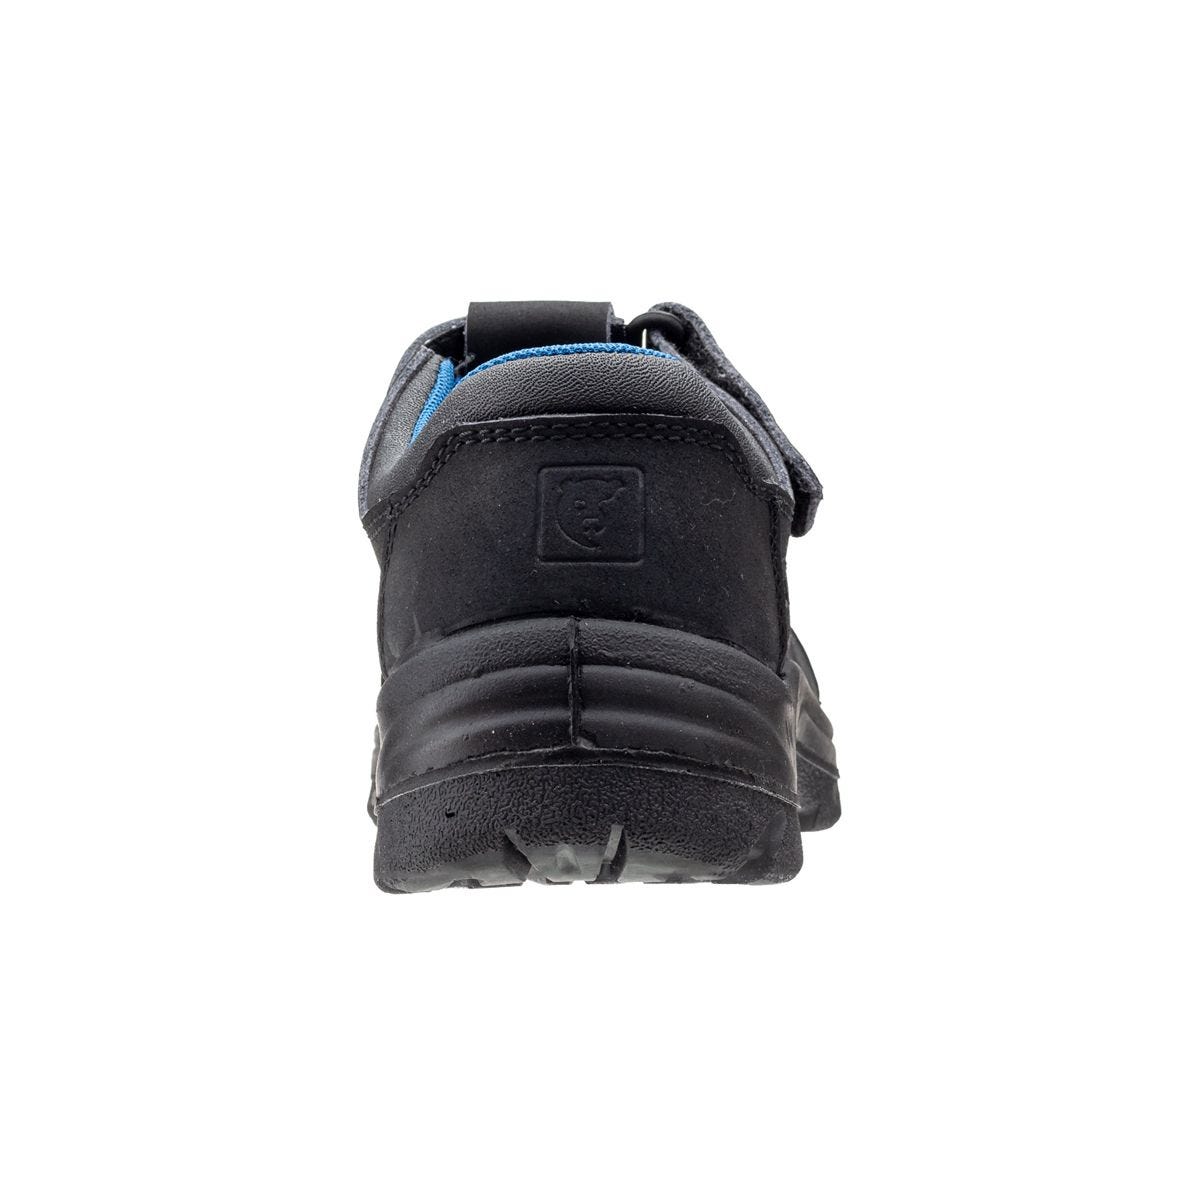 Sandales de travail basses Boni II Noir - Coverguard - Taille 43 2